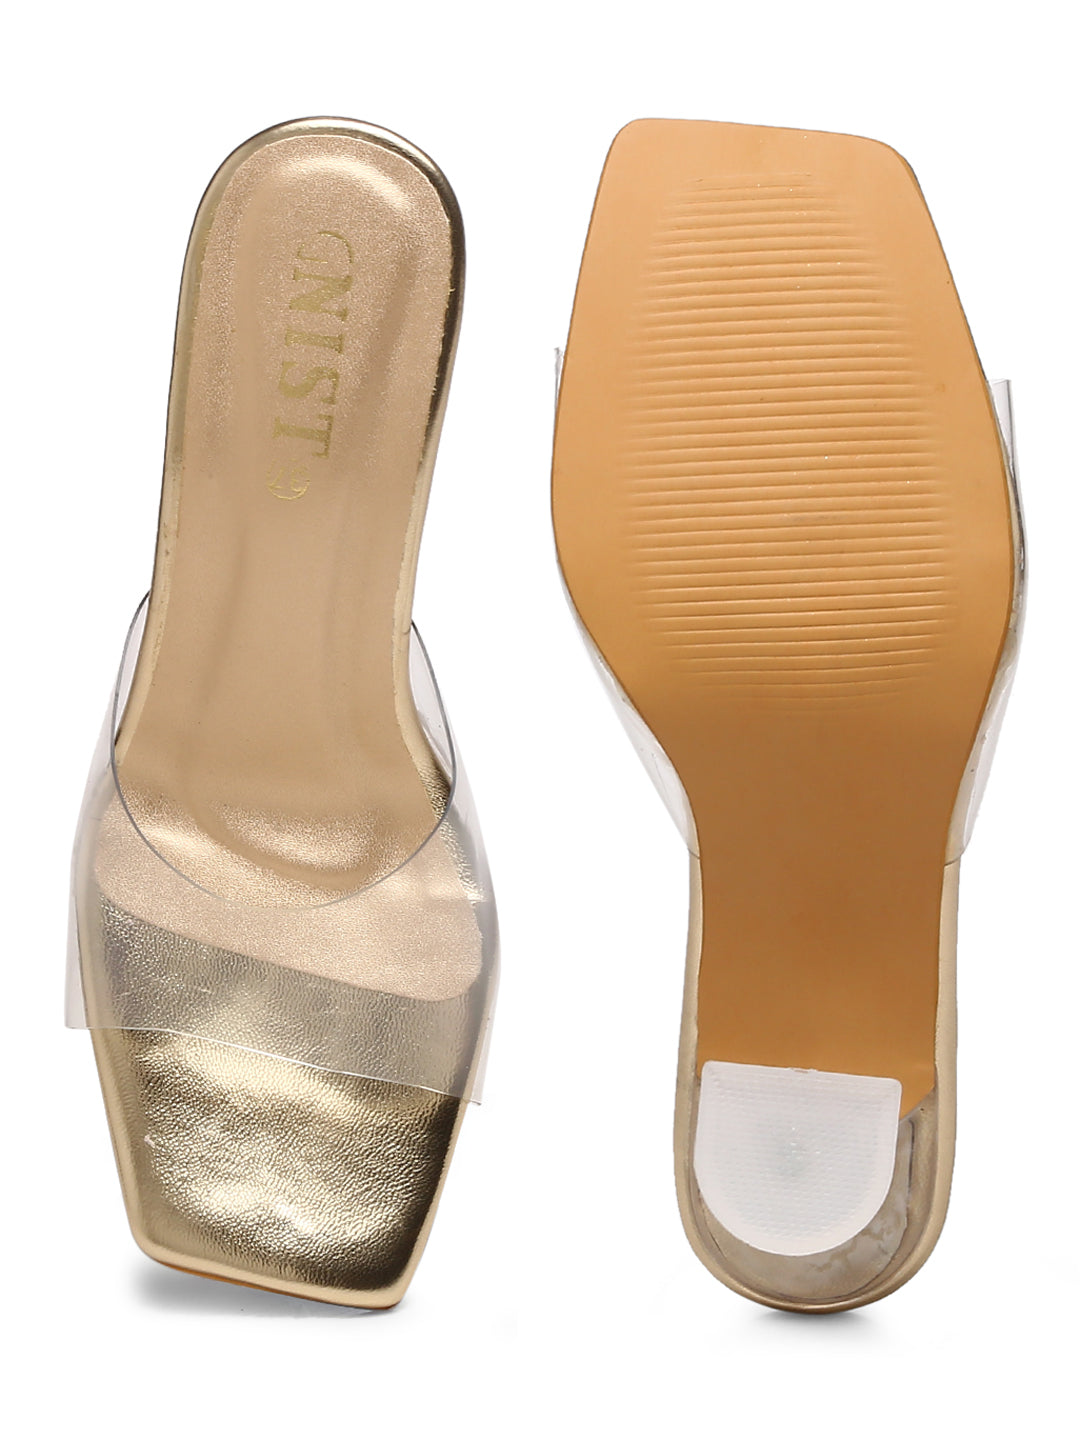 GNIST Gold Transparent Strap Stilettos Heel